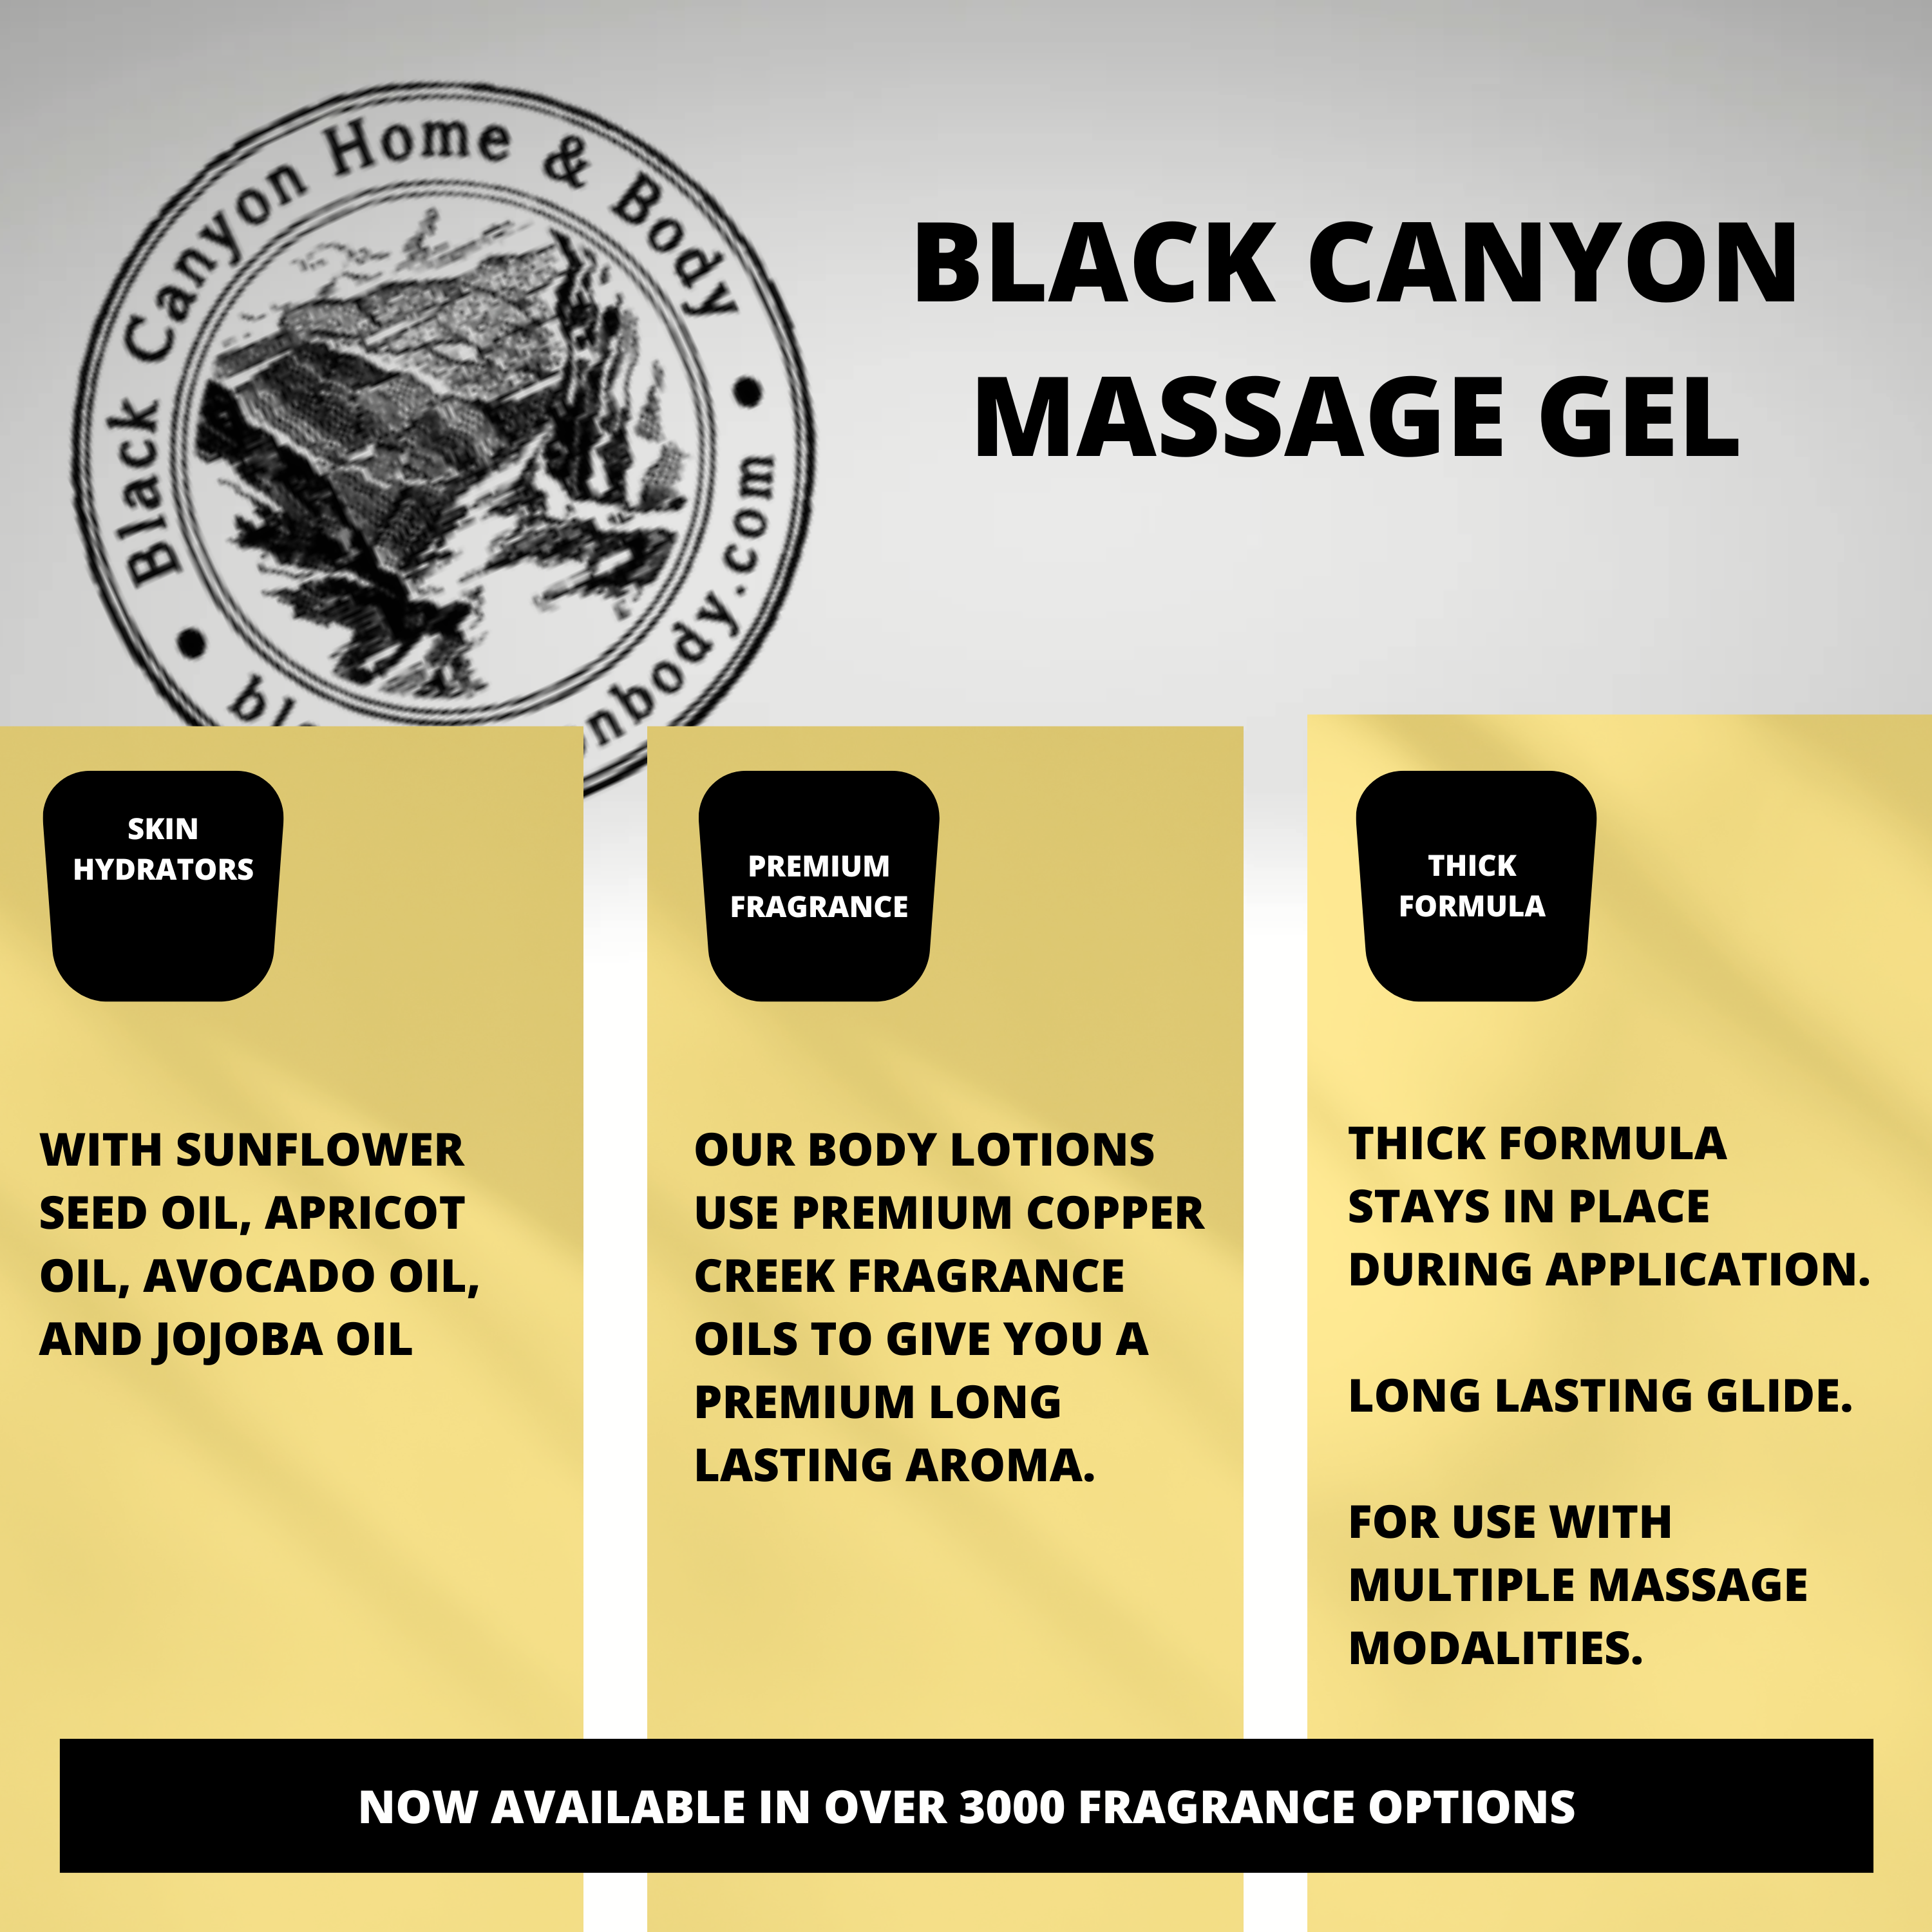 Black Canyon Black Currant & Rose Scented Massage Gel